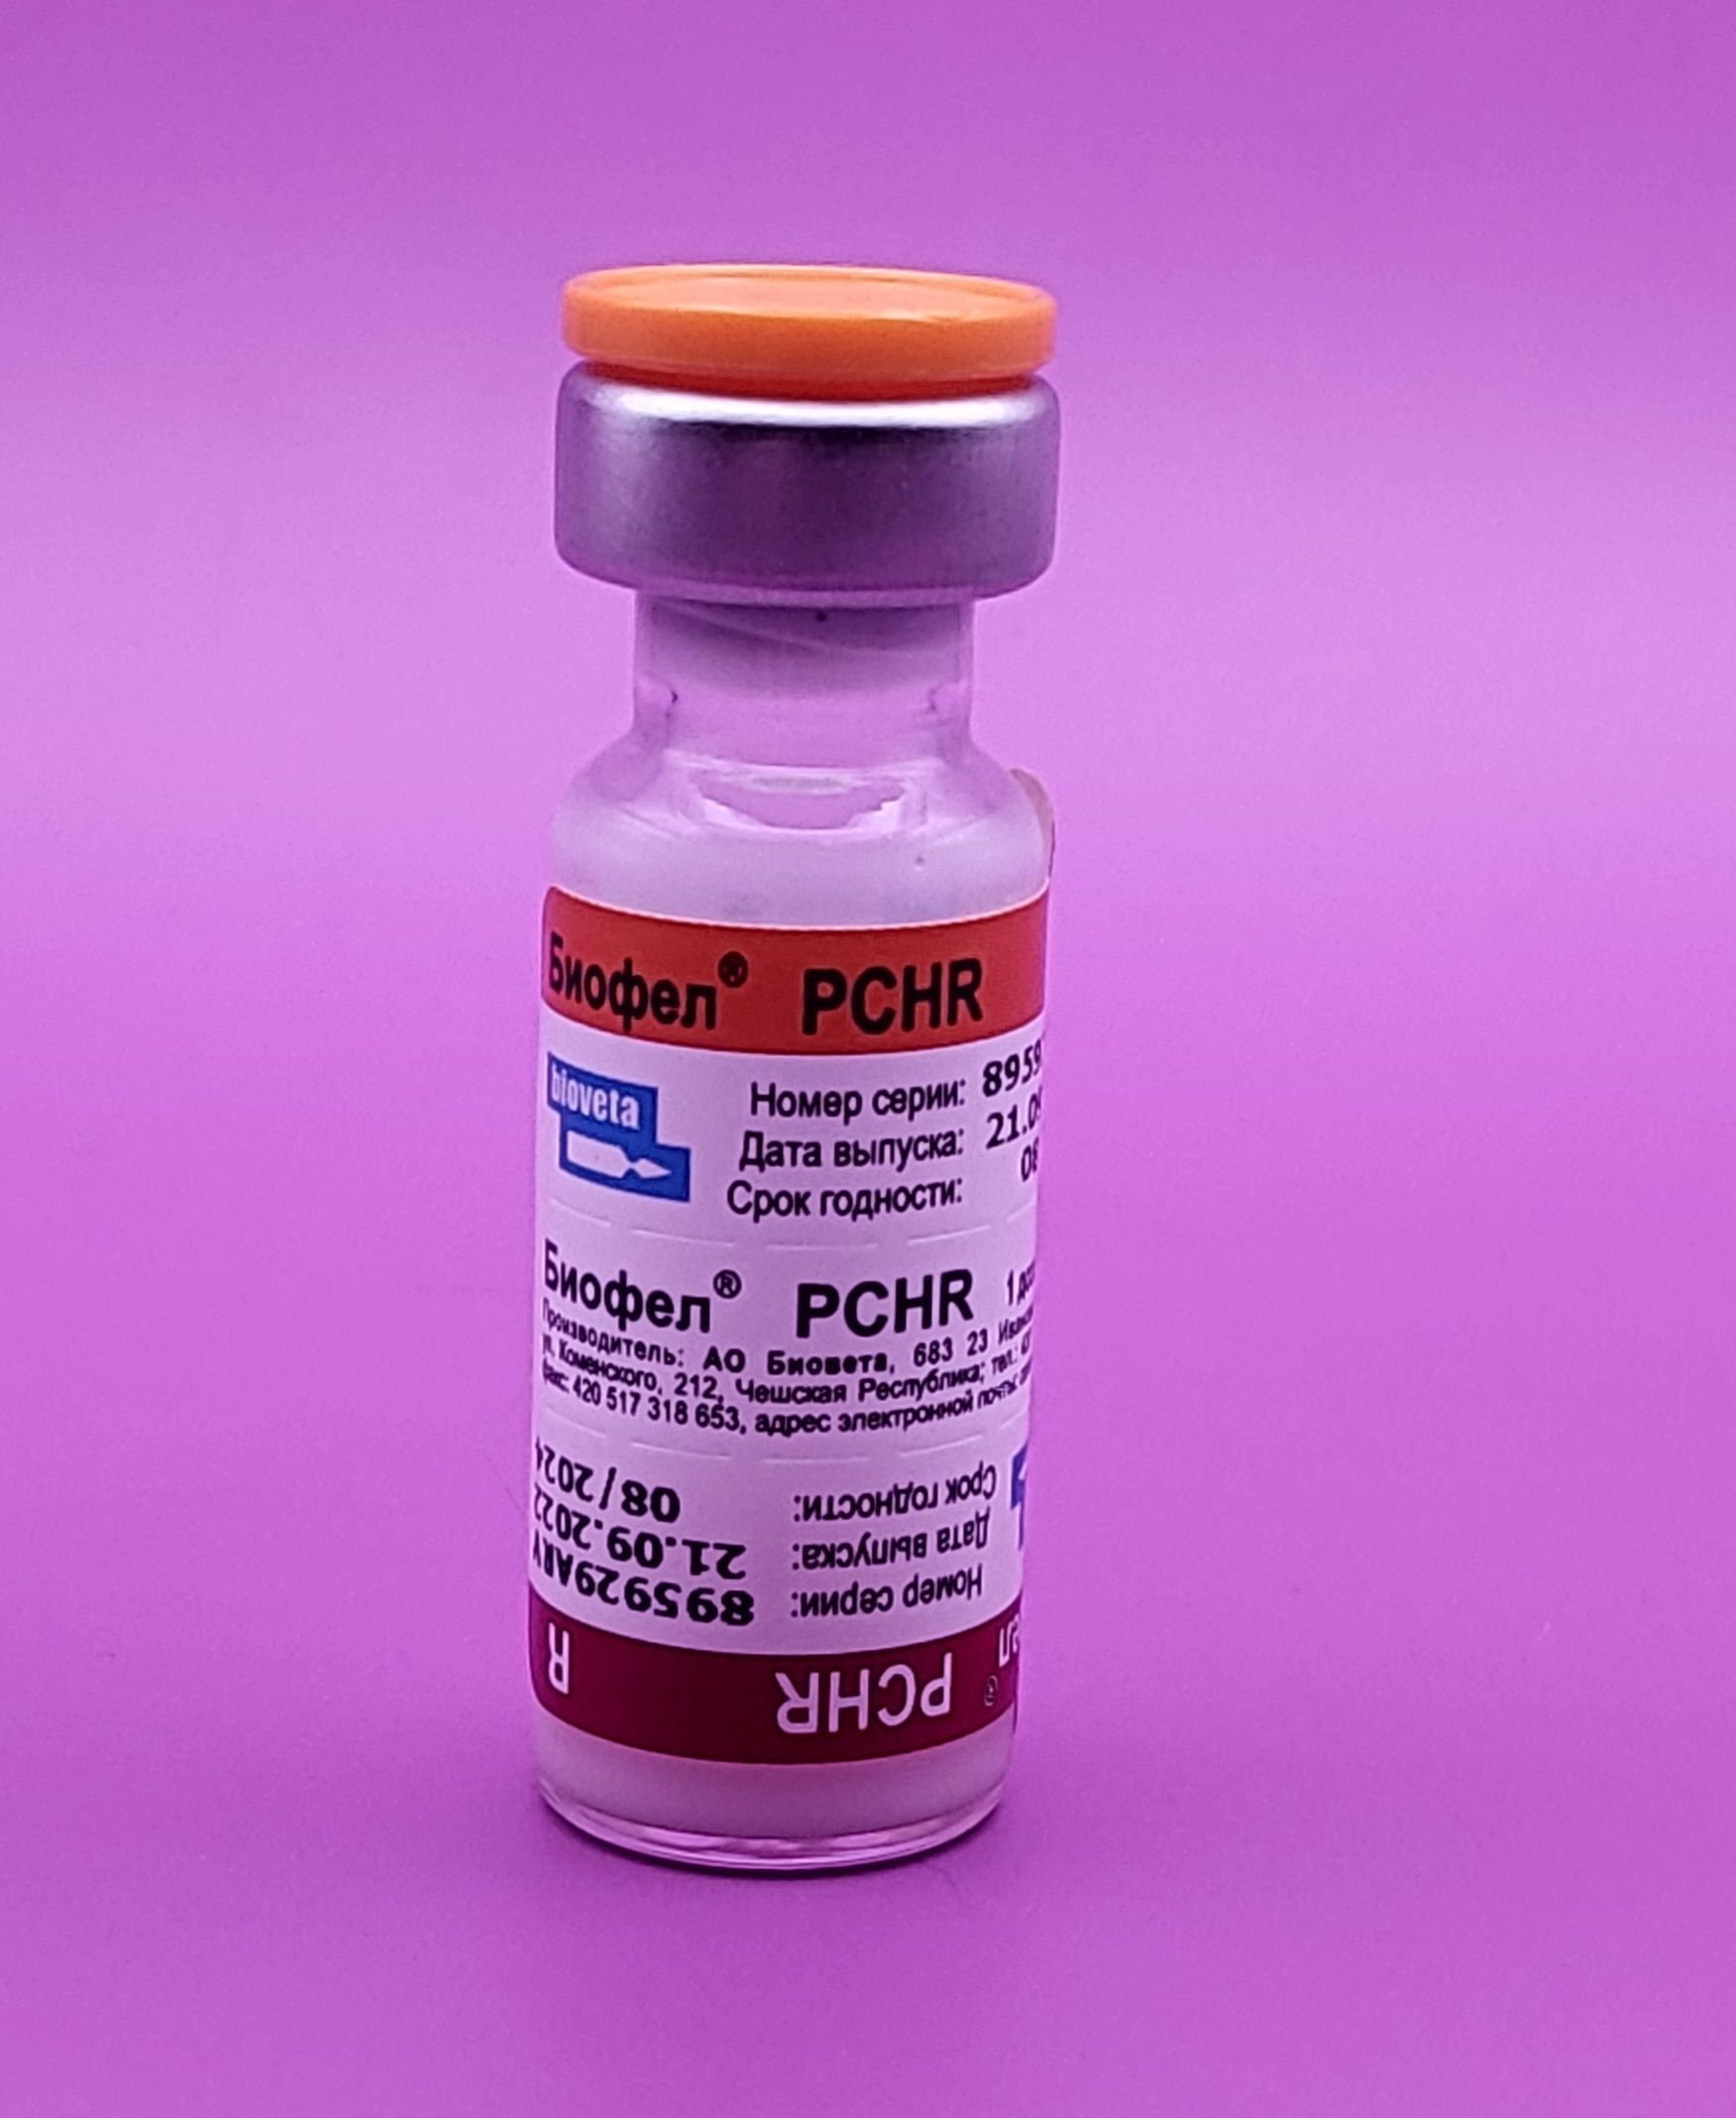 Pchr вакцина. Вакцина Биофел PCHR. Биофел вакцина для кошек. Биофел PCHR для кошек. Вакцина Биофел PCHR для кошек против бешенства.